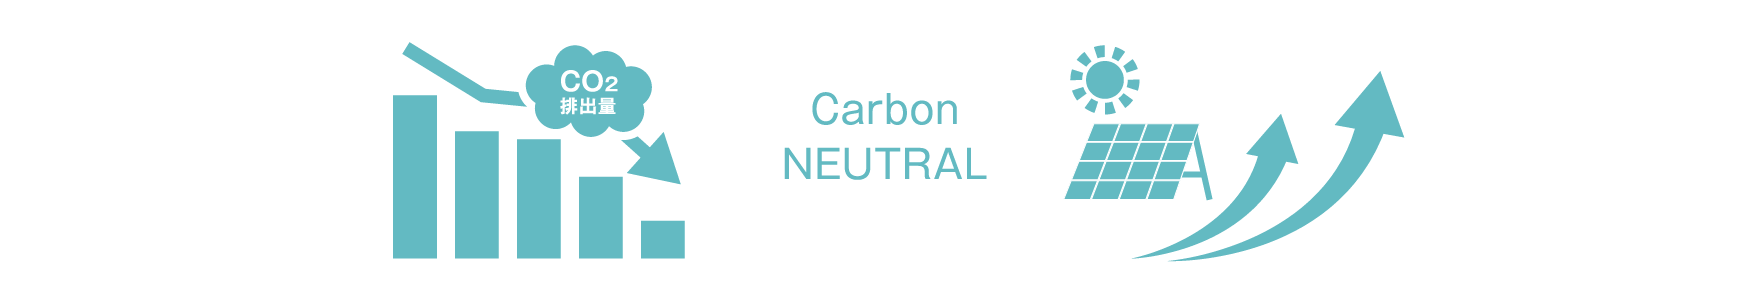 Carbon NEUTRAL